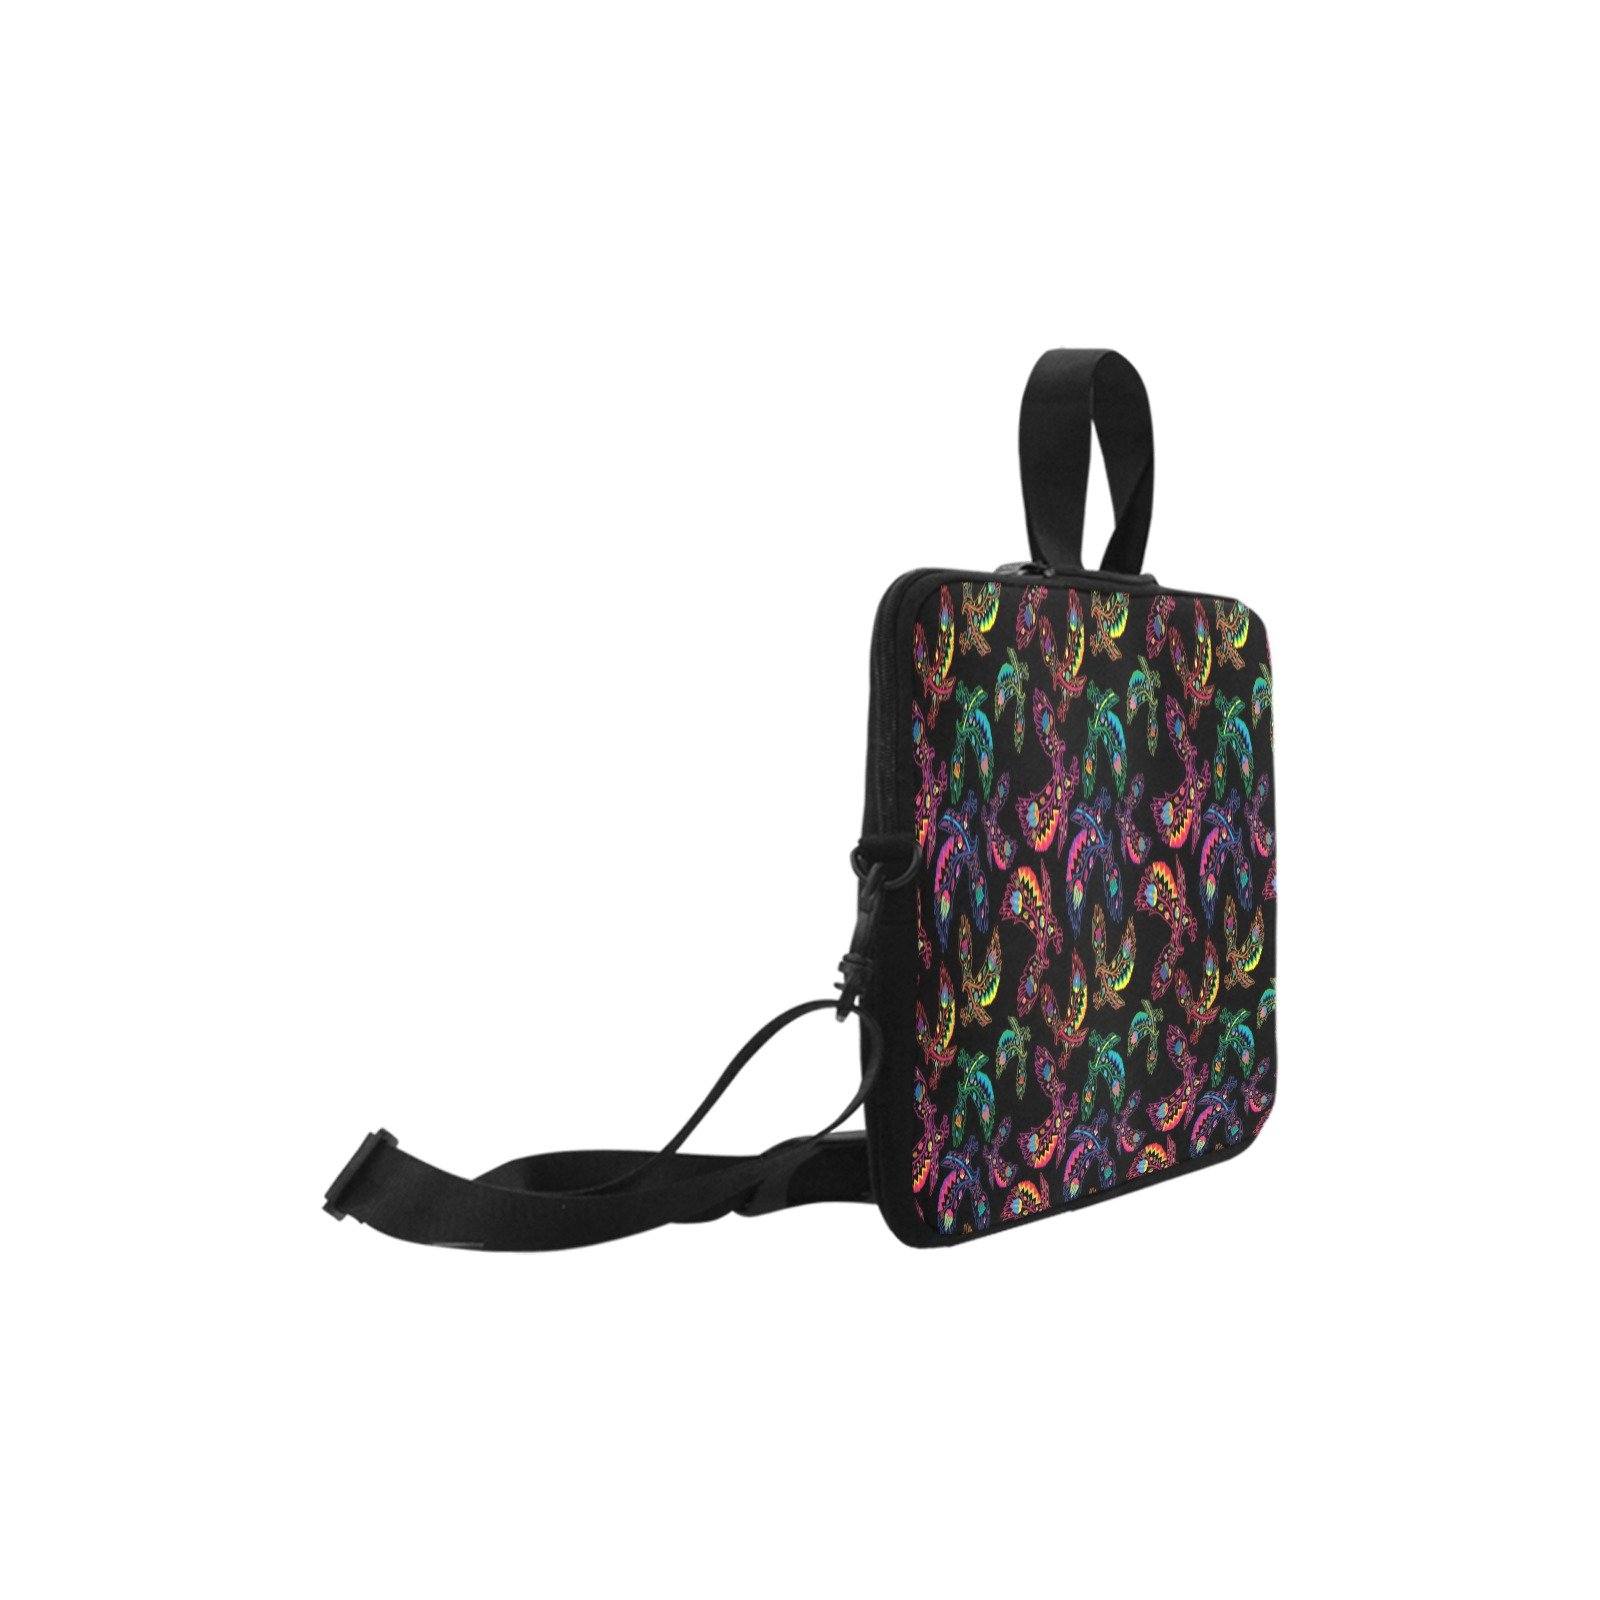 Floral Eagle Laptop Handbags 15" Laptop Handbags 15" e-joyer 